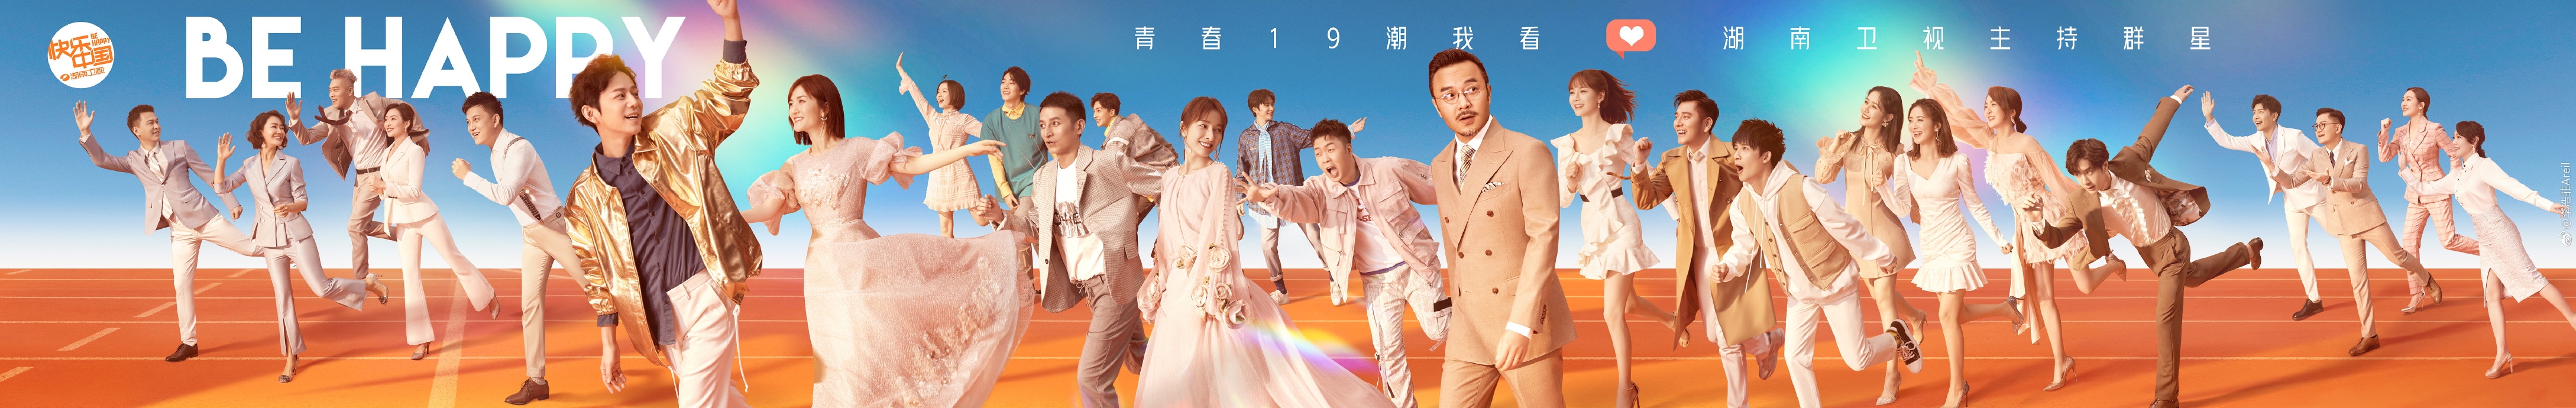 2018-2019湖南衛視跨年演唱會